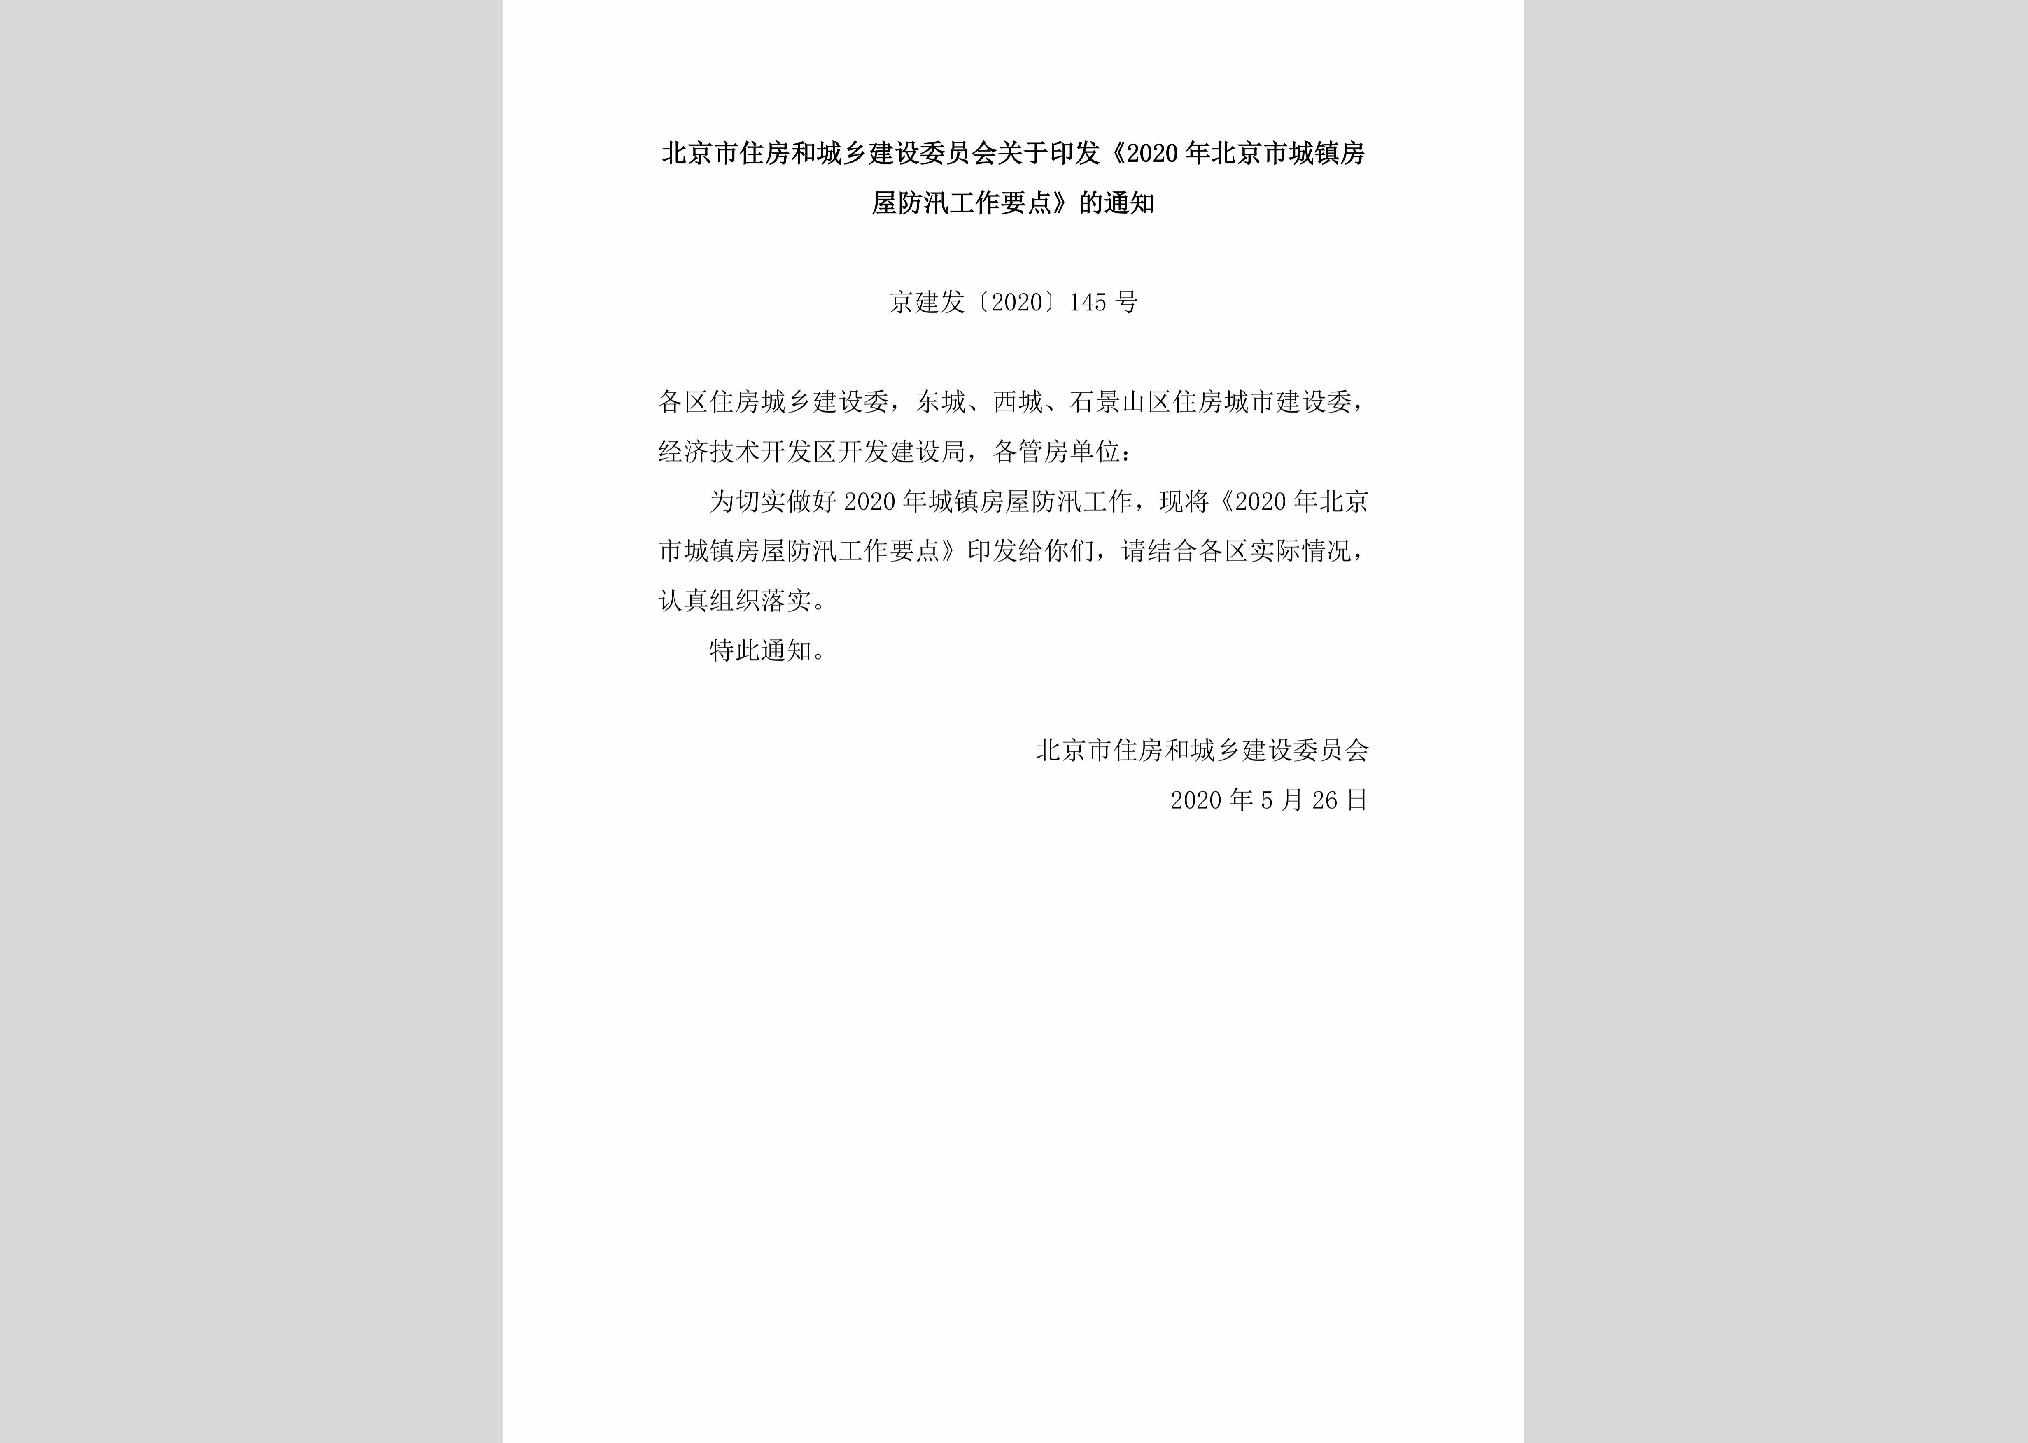 京建发[2020]145号：北京市住房和城乡建设委员会关于印发《2020年北京市城镇房屋防汛工作要点》的通知